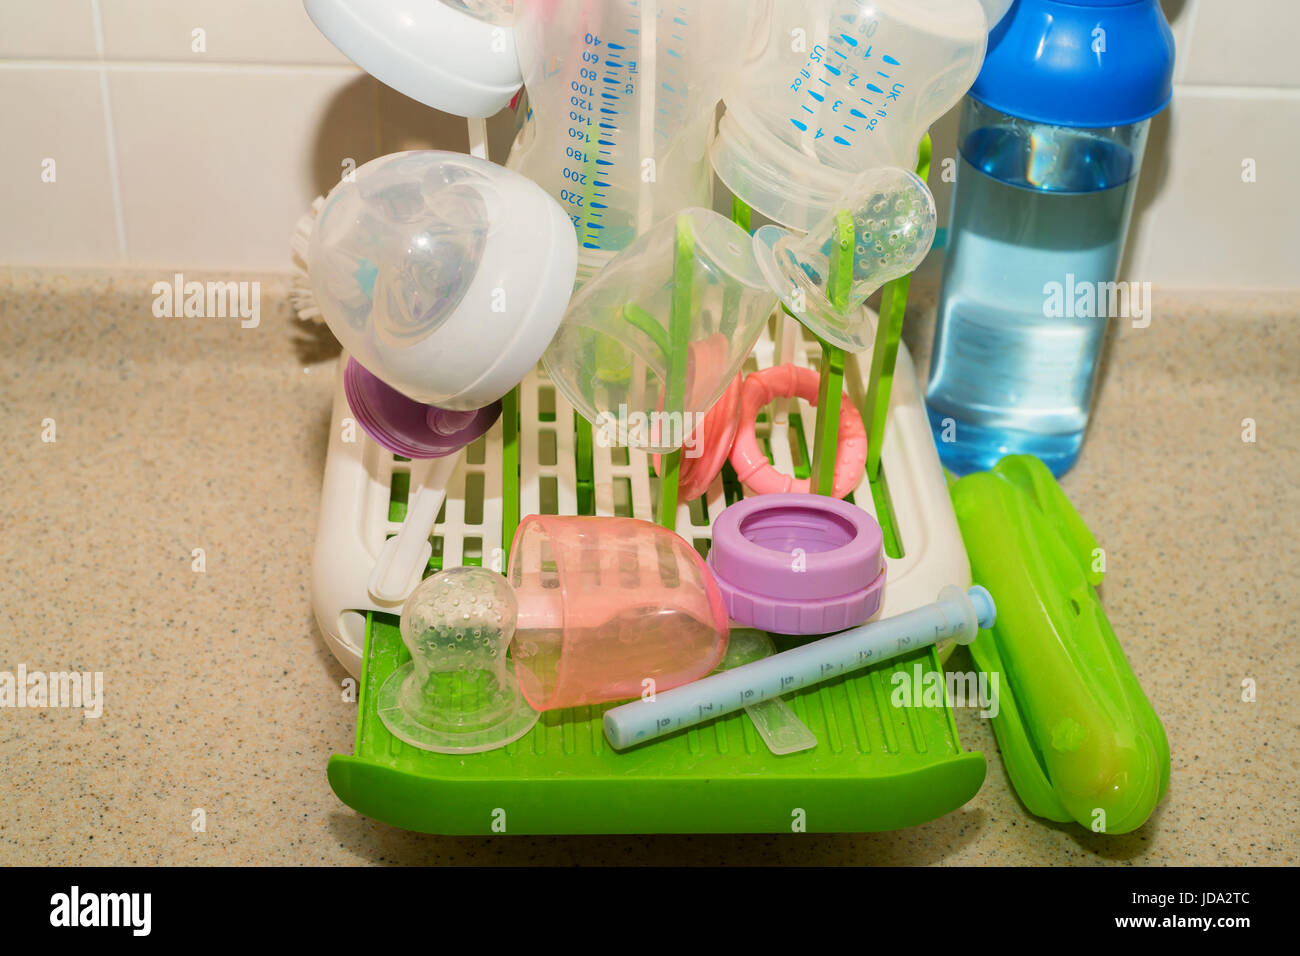 Schließen Sie sich bunte Babyflaschen Trocknen auf weißen  Kunststoff-Ständer Stockfotografie - Alamy